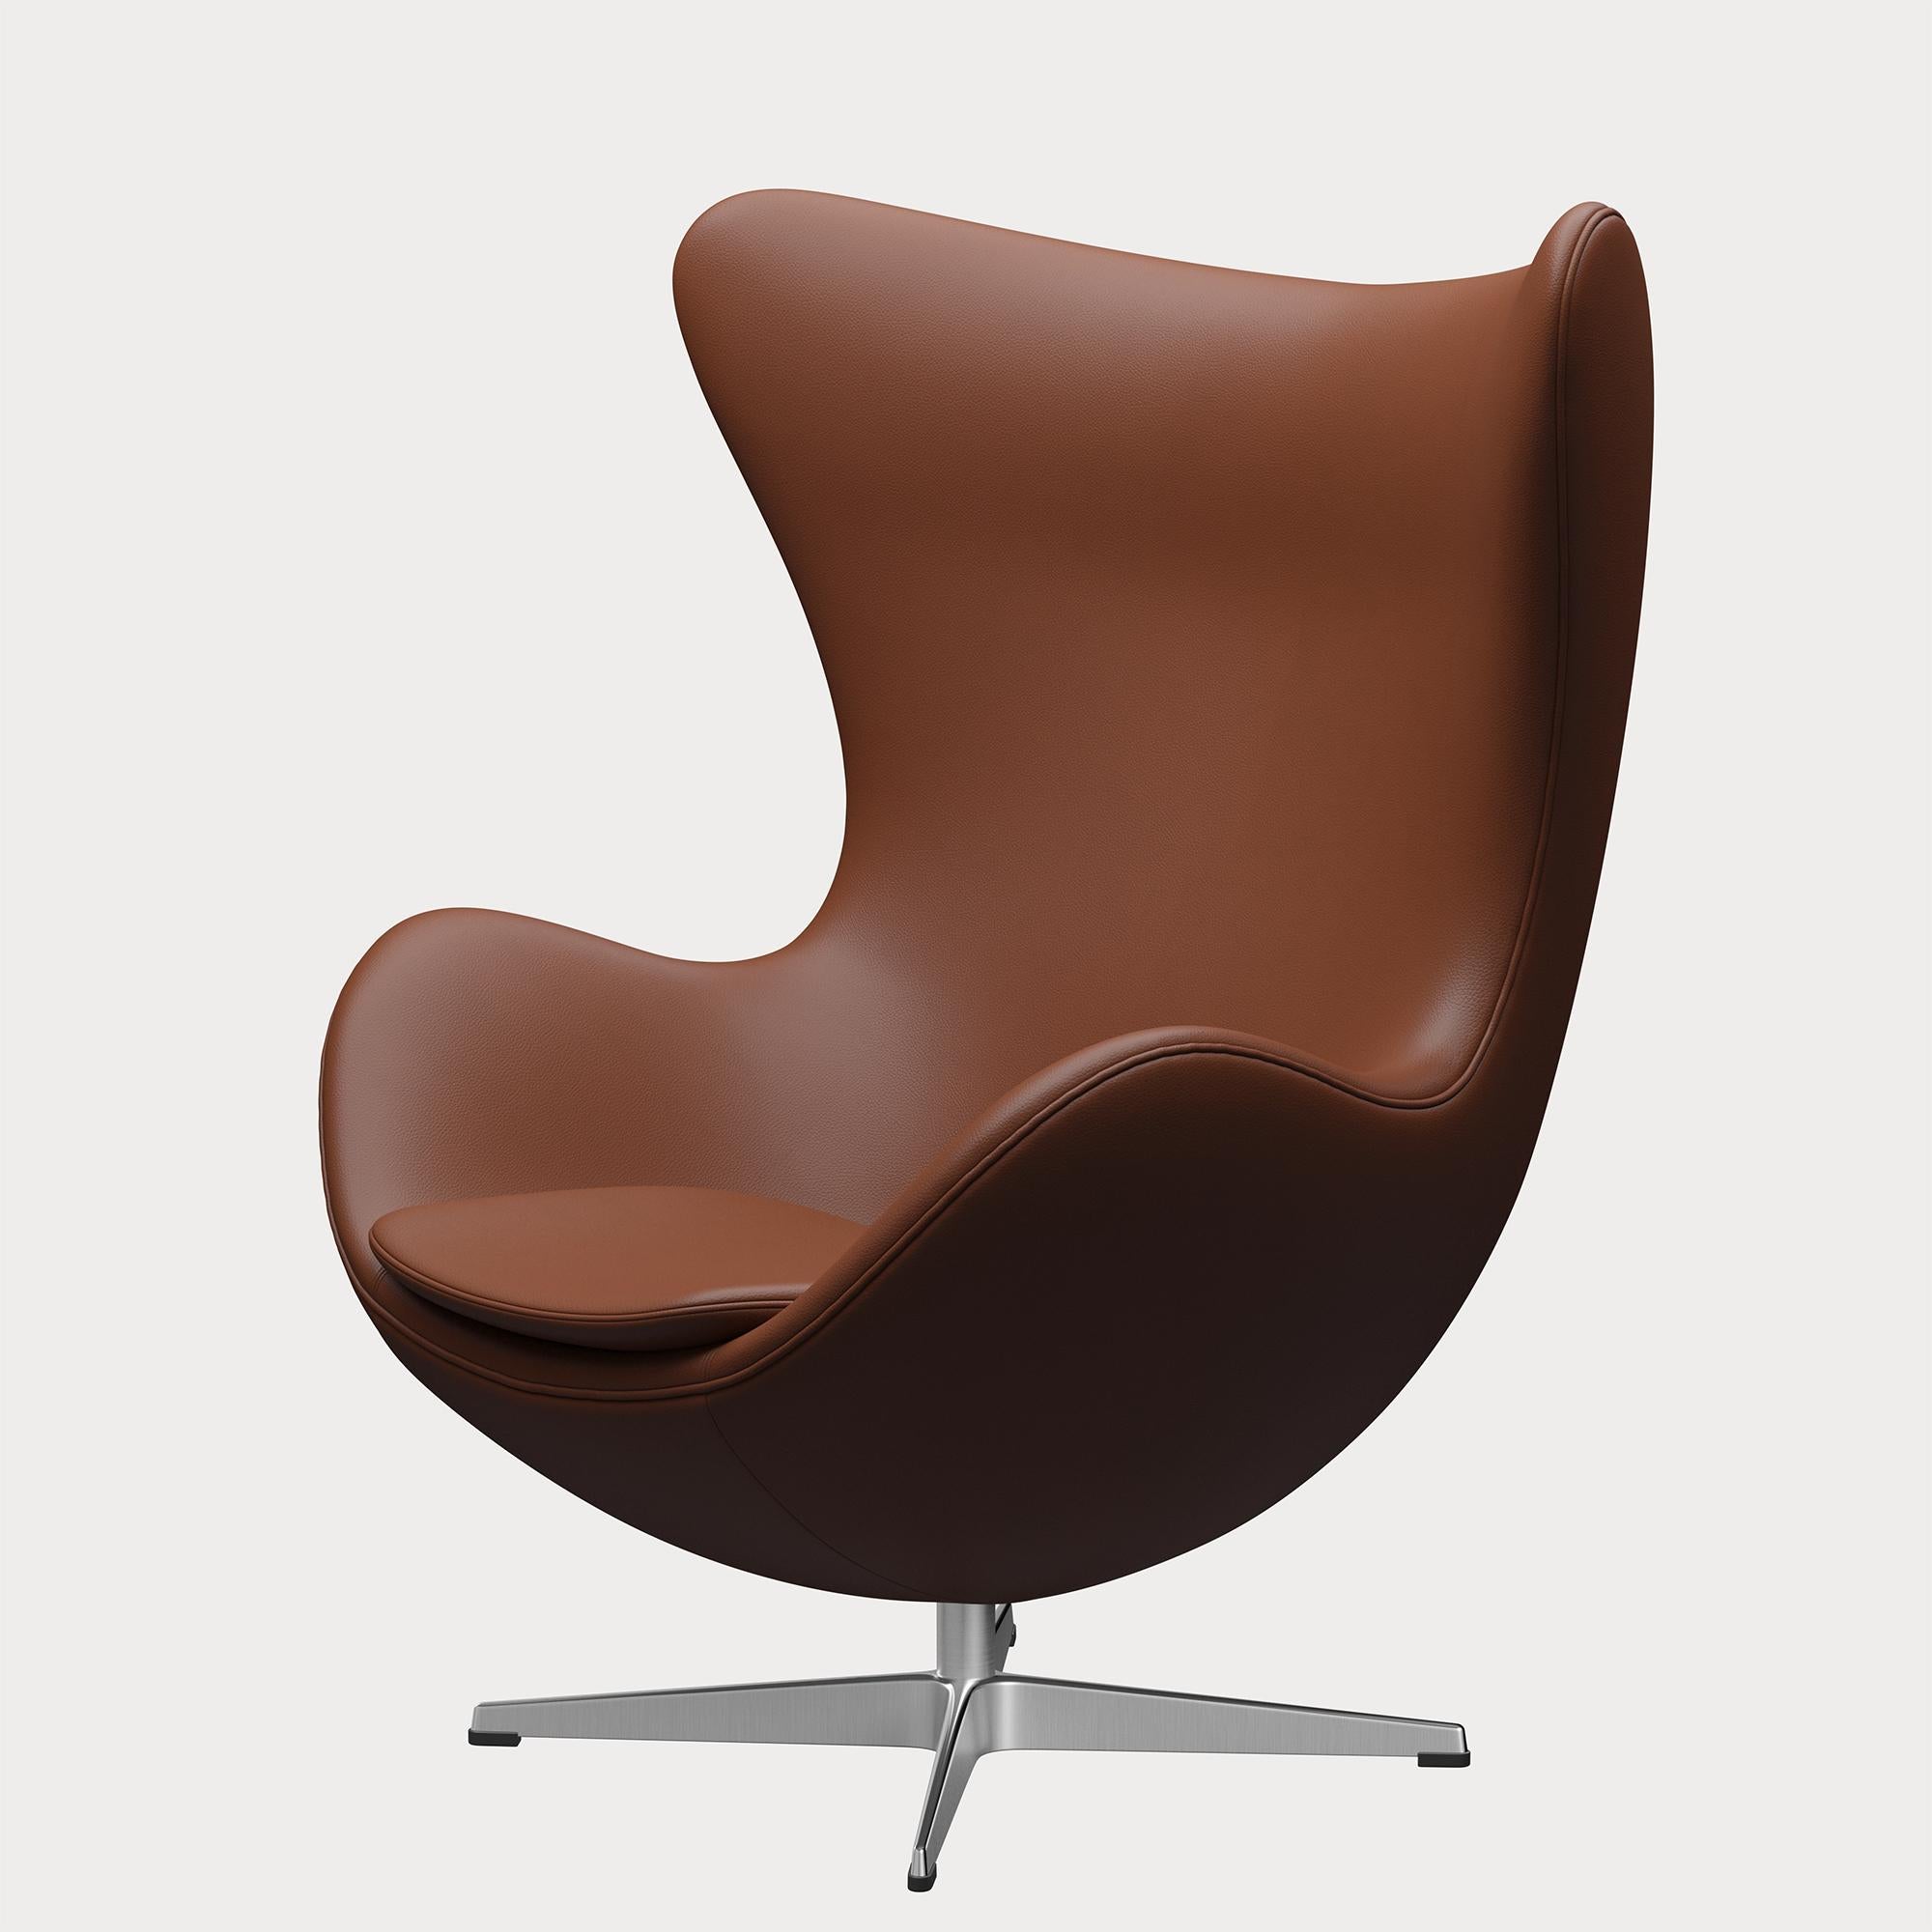 Arne Jacobsen 'Egg' Chair for Fritz Hansen in Leather Upholstery (Cat. 4) For Sale 2